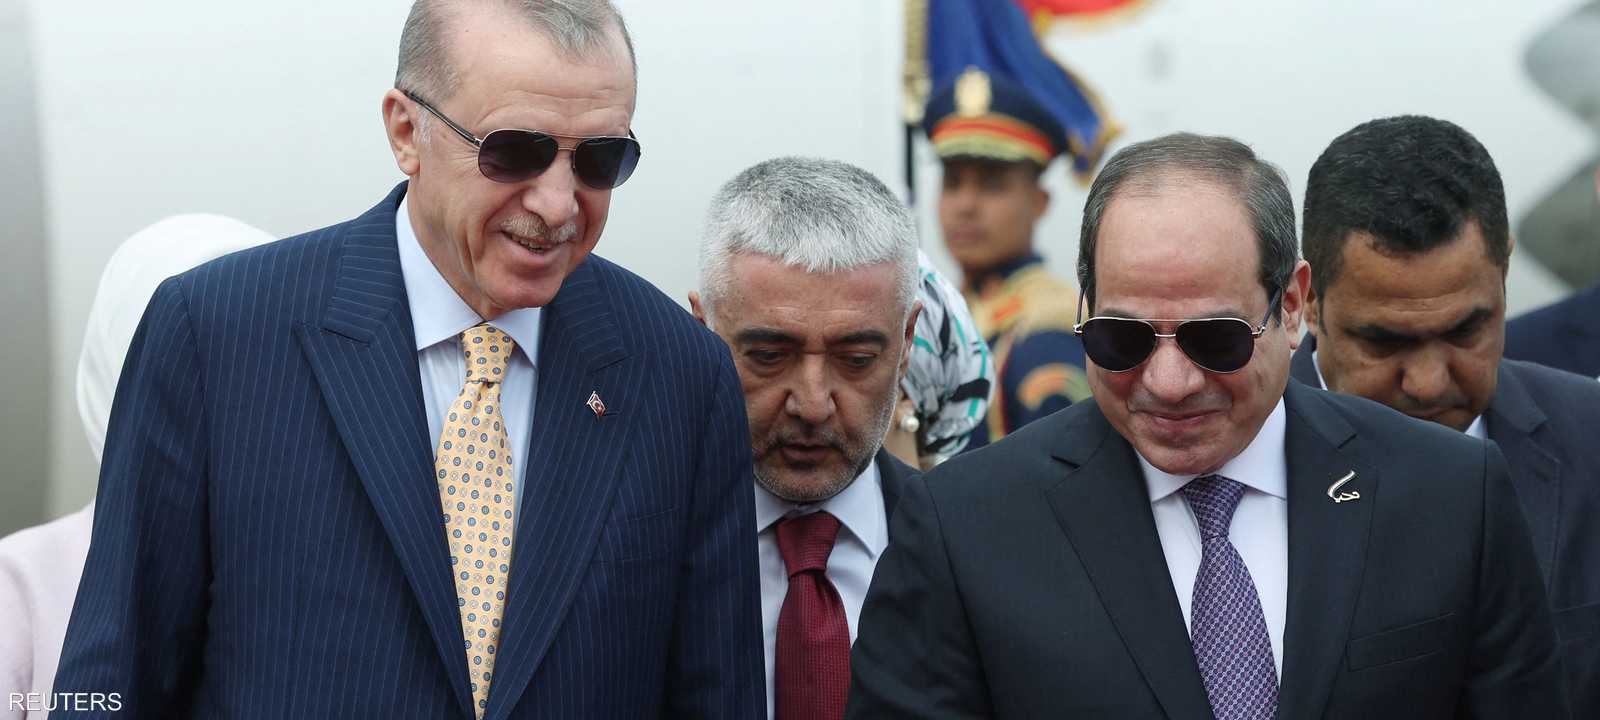 هذه أول زيارة لأردوغان إلى مصر منذ حوالي 12 سنة